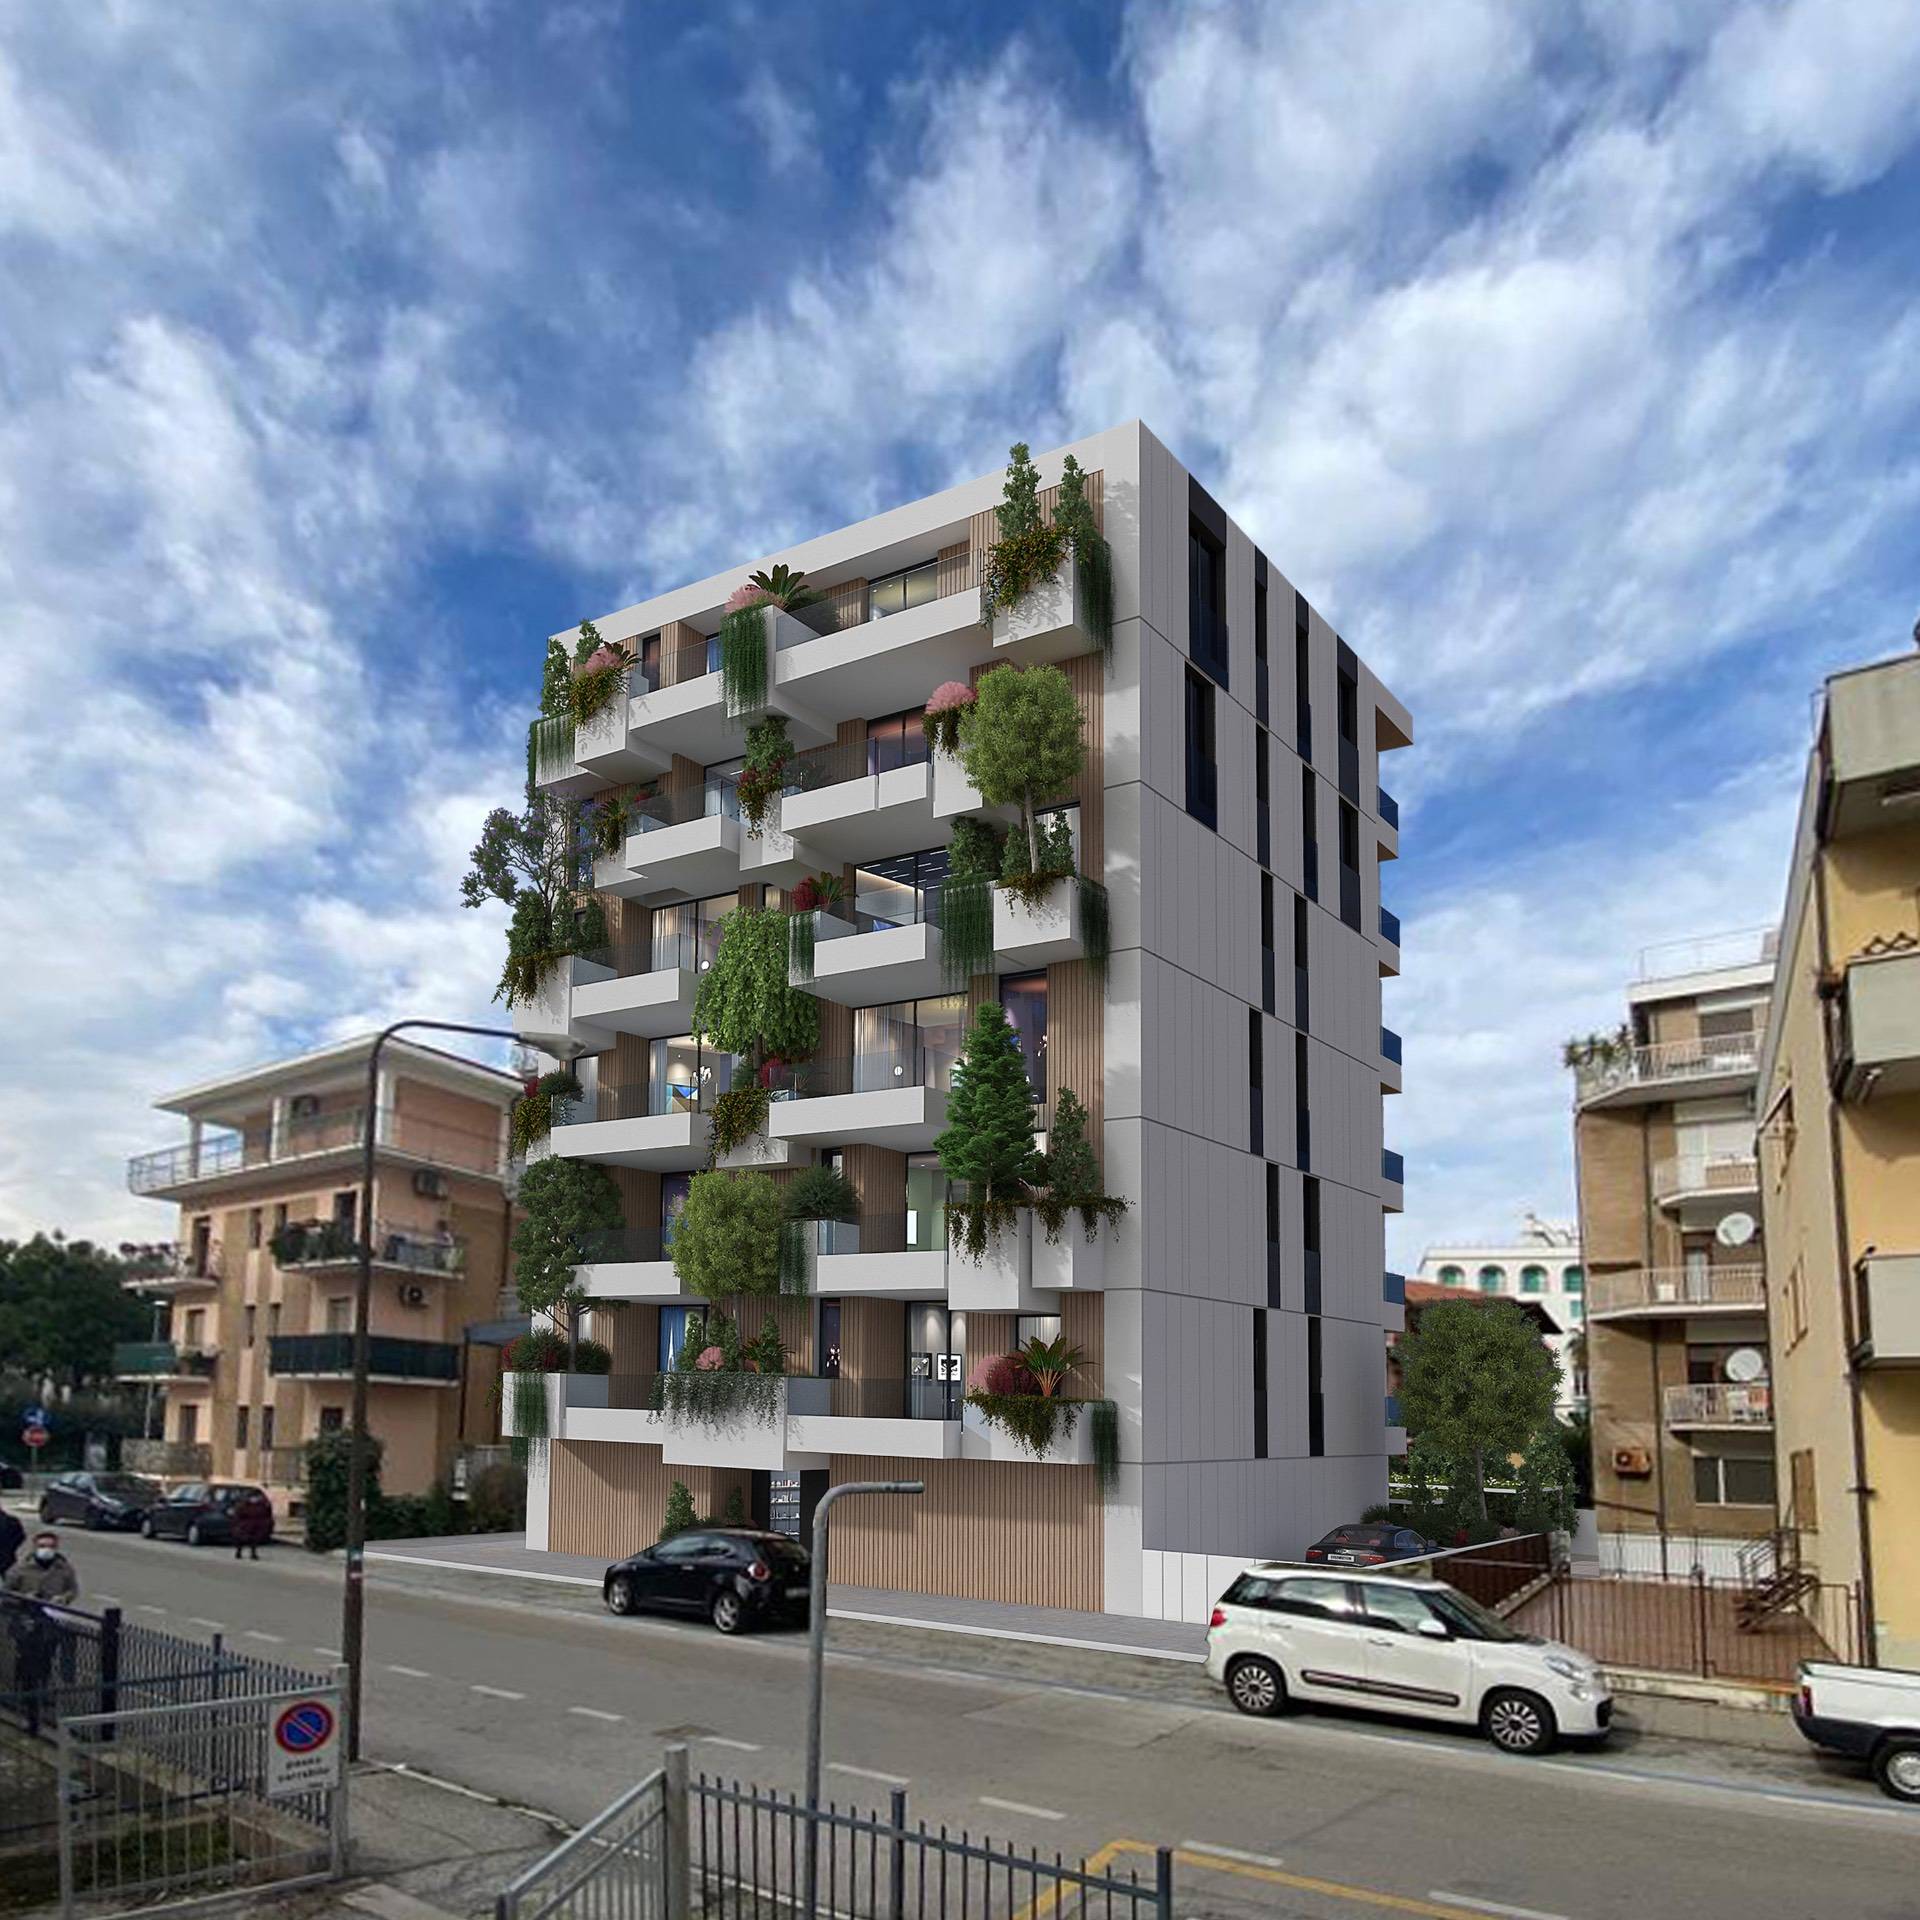 Appartamento in vendita a San Benedetto del Tronto, 2 locali, zona Località: PortoDascolilungomare, prezzo € 350.000 | PortaleAgenzieImmobiliari.it